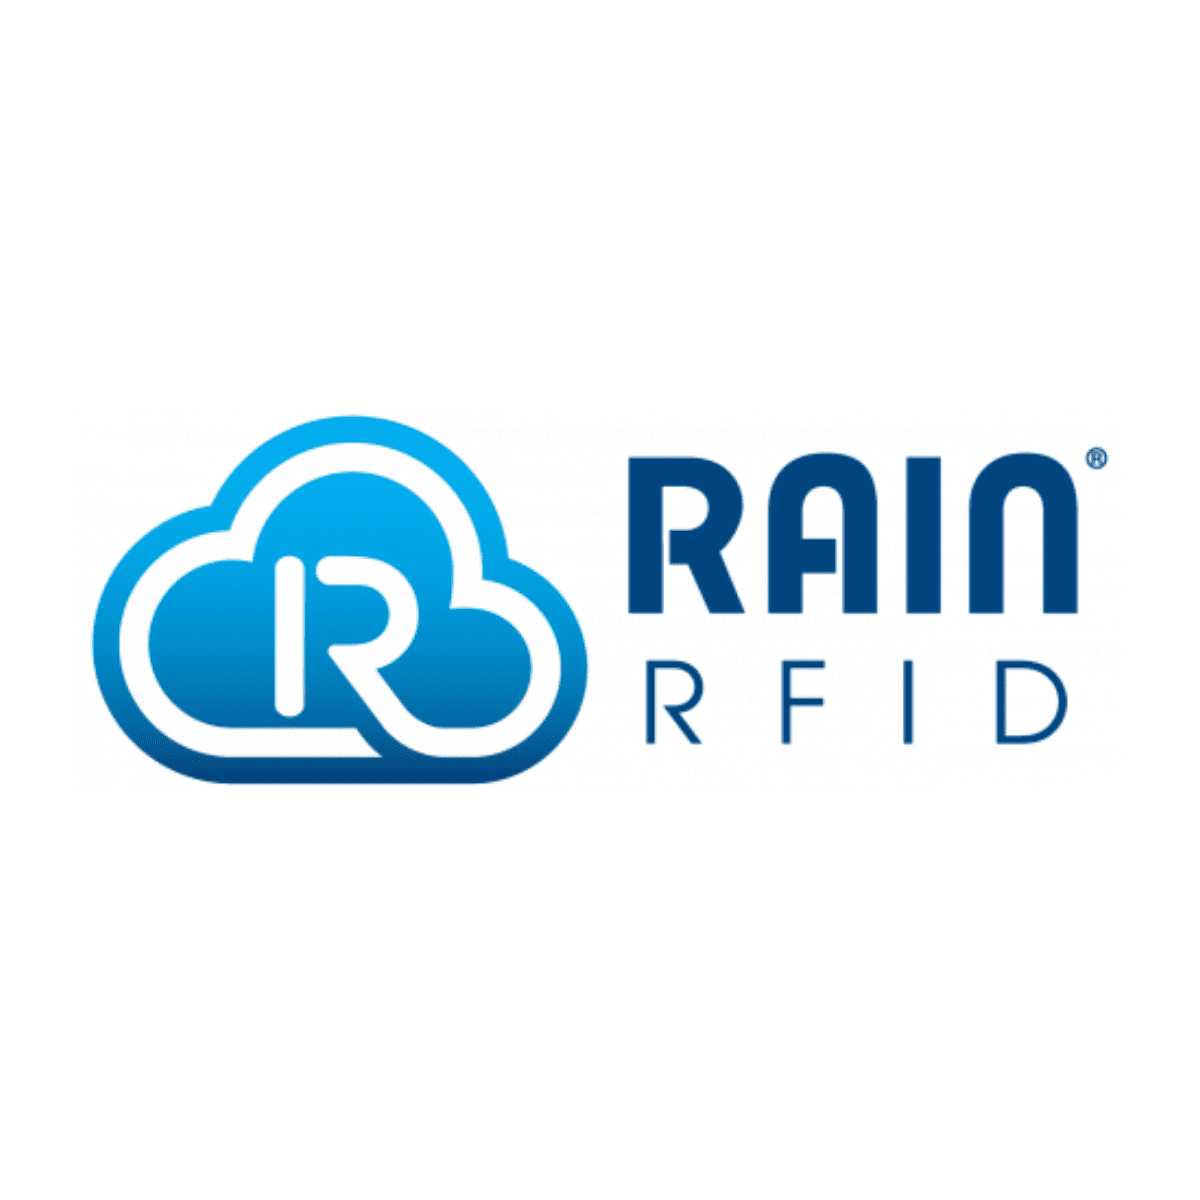 Corso Magenta a participé à une conférence organisée par Aim et Rain RFID alliance, Corso Magenta a participé à une conférence organisée par AIM &#038; RAIN